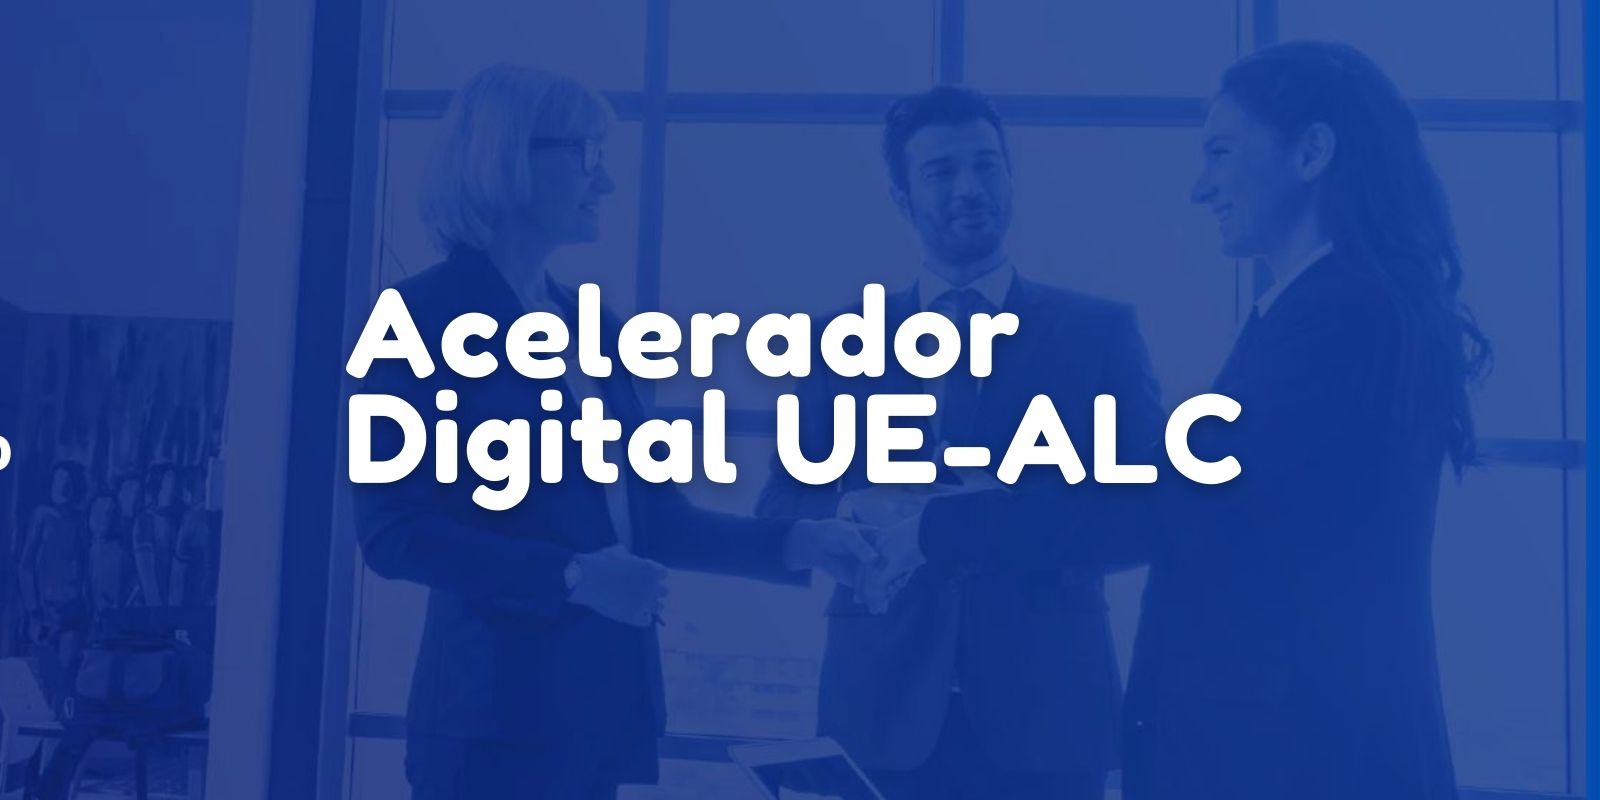 Conectando startups acelerador Digital UE-ALC